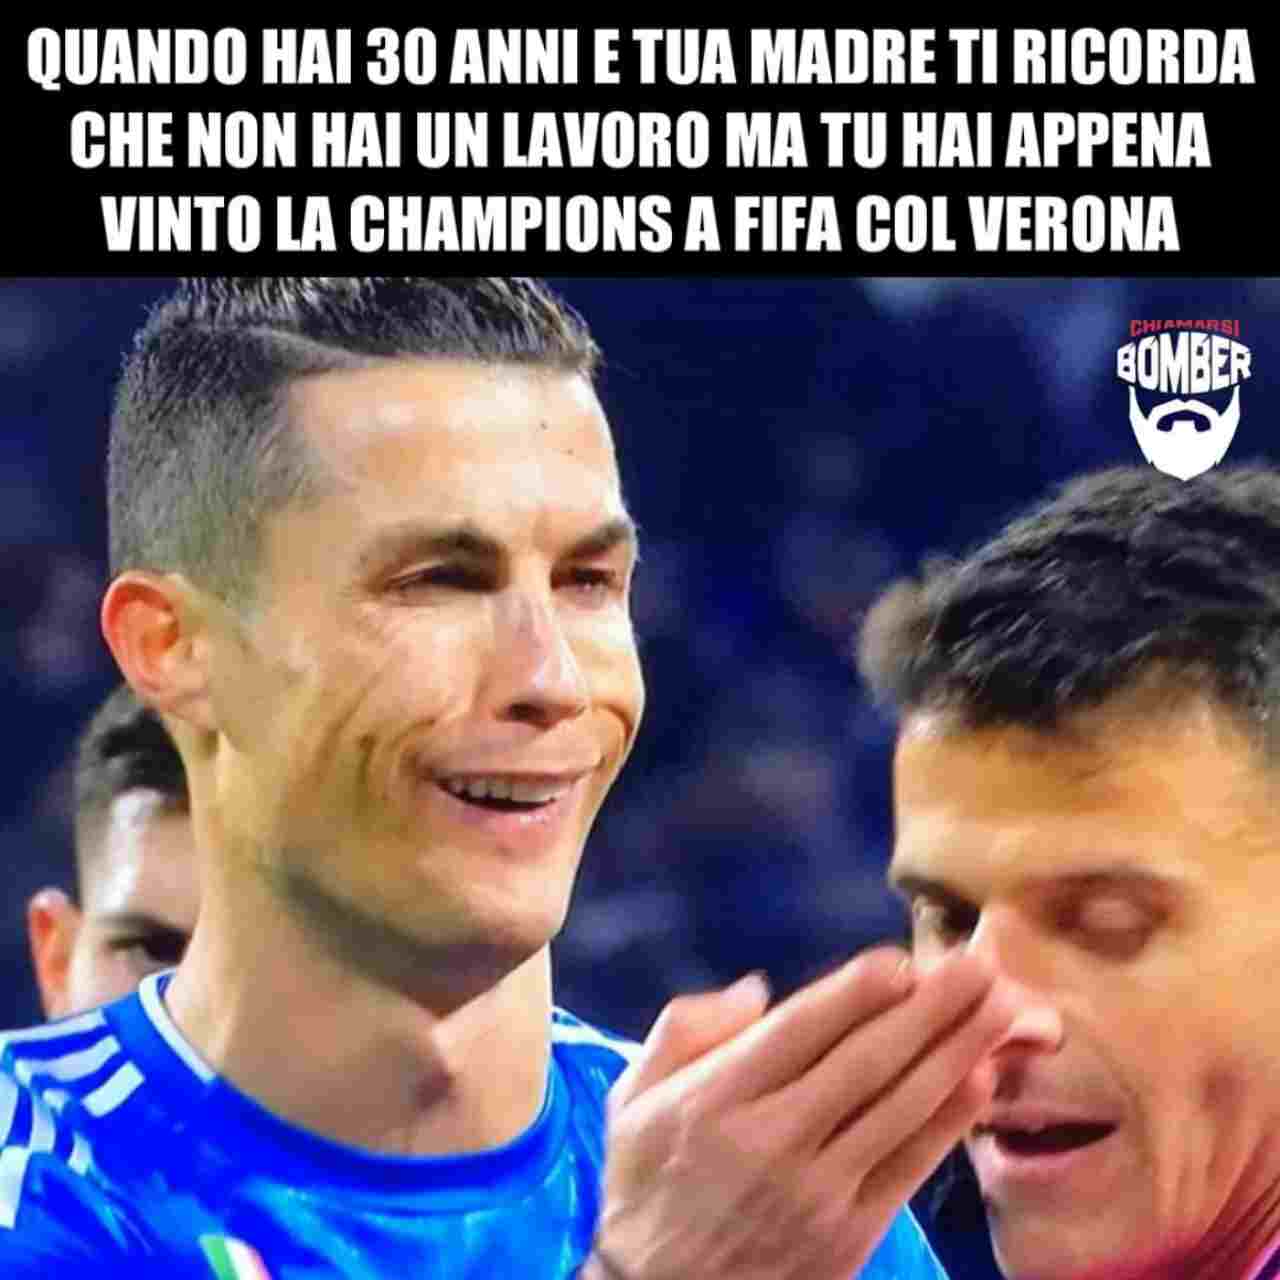 Cristiano Ronaldo, il Meme su Lione-Juve impazza sui social - FOTO